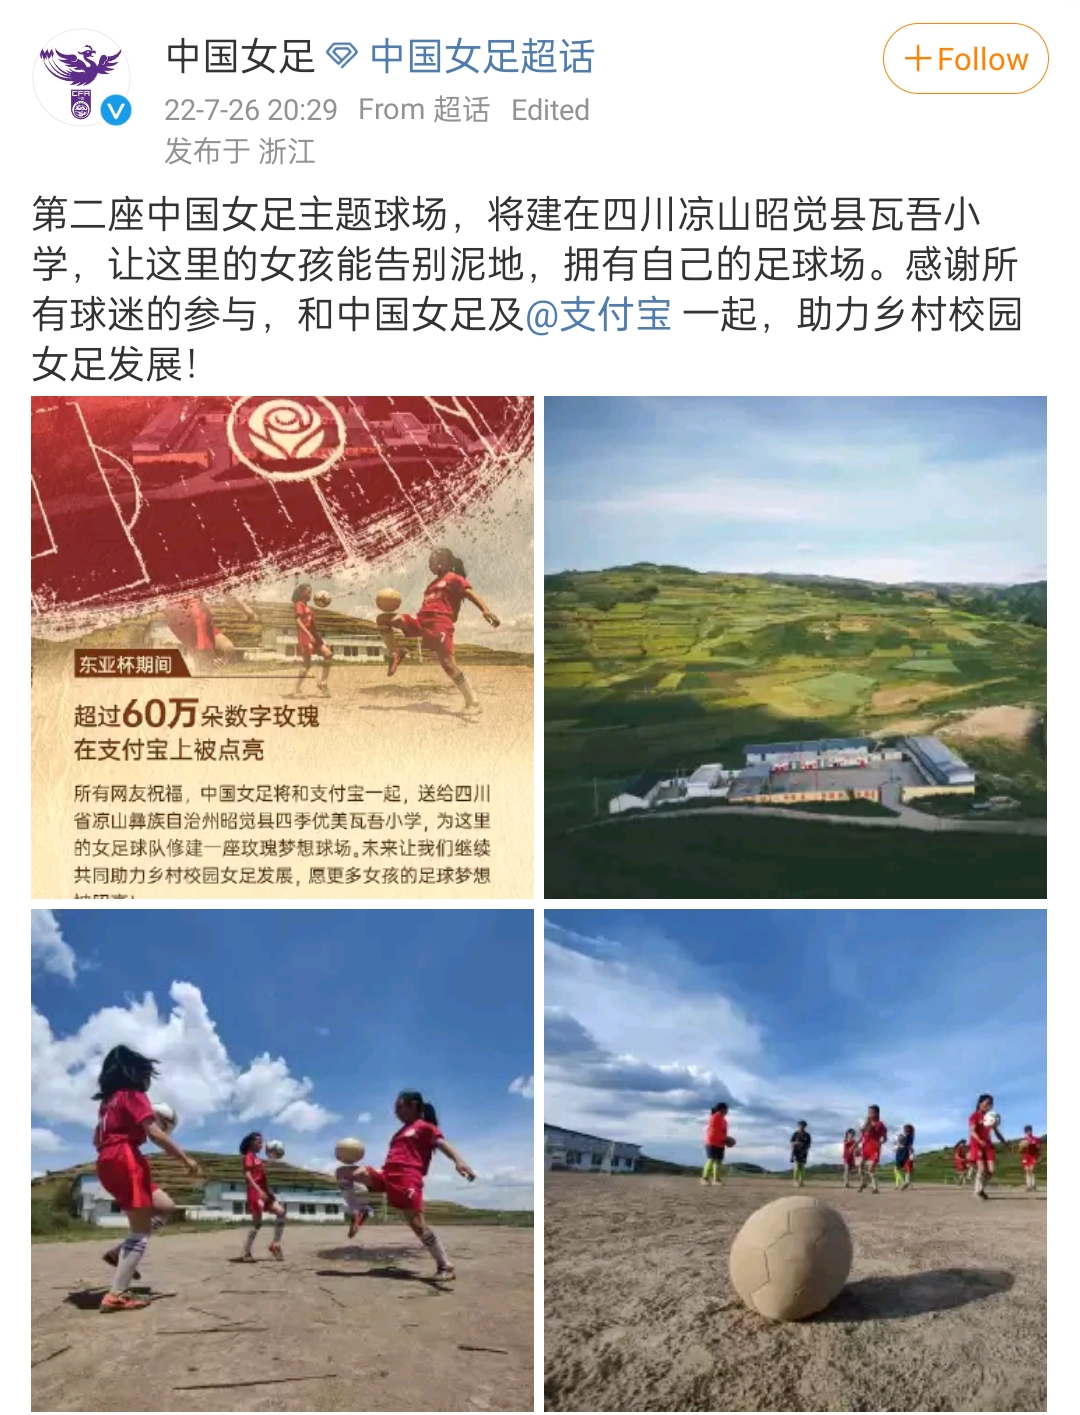 “玫瑰梦想”云端绽放！第二座中国女足主题球场落地四川凉山